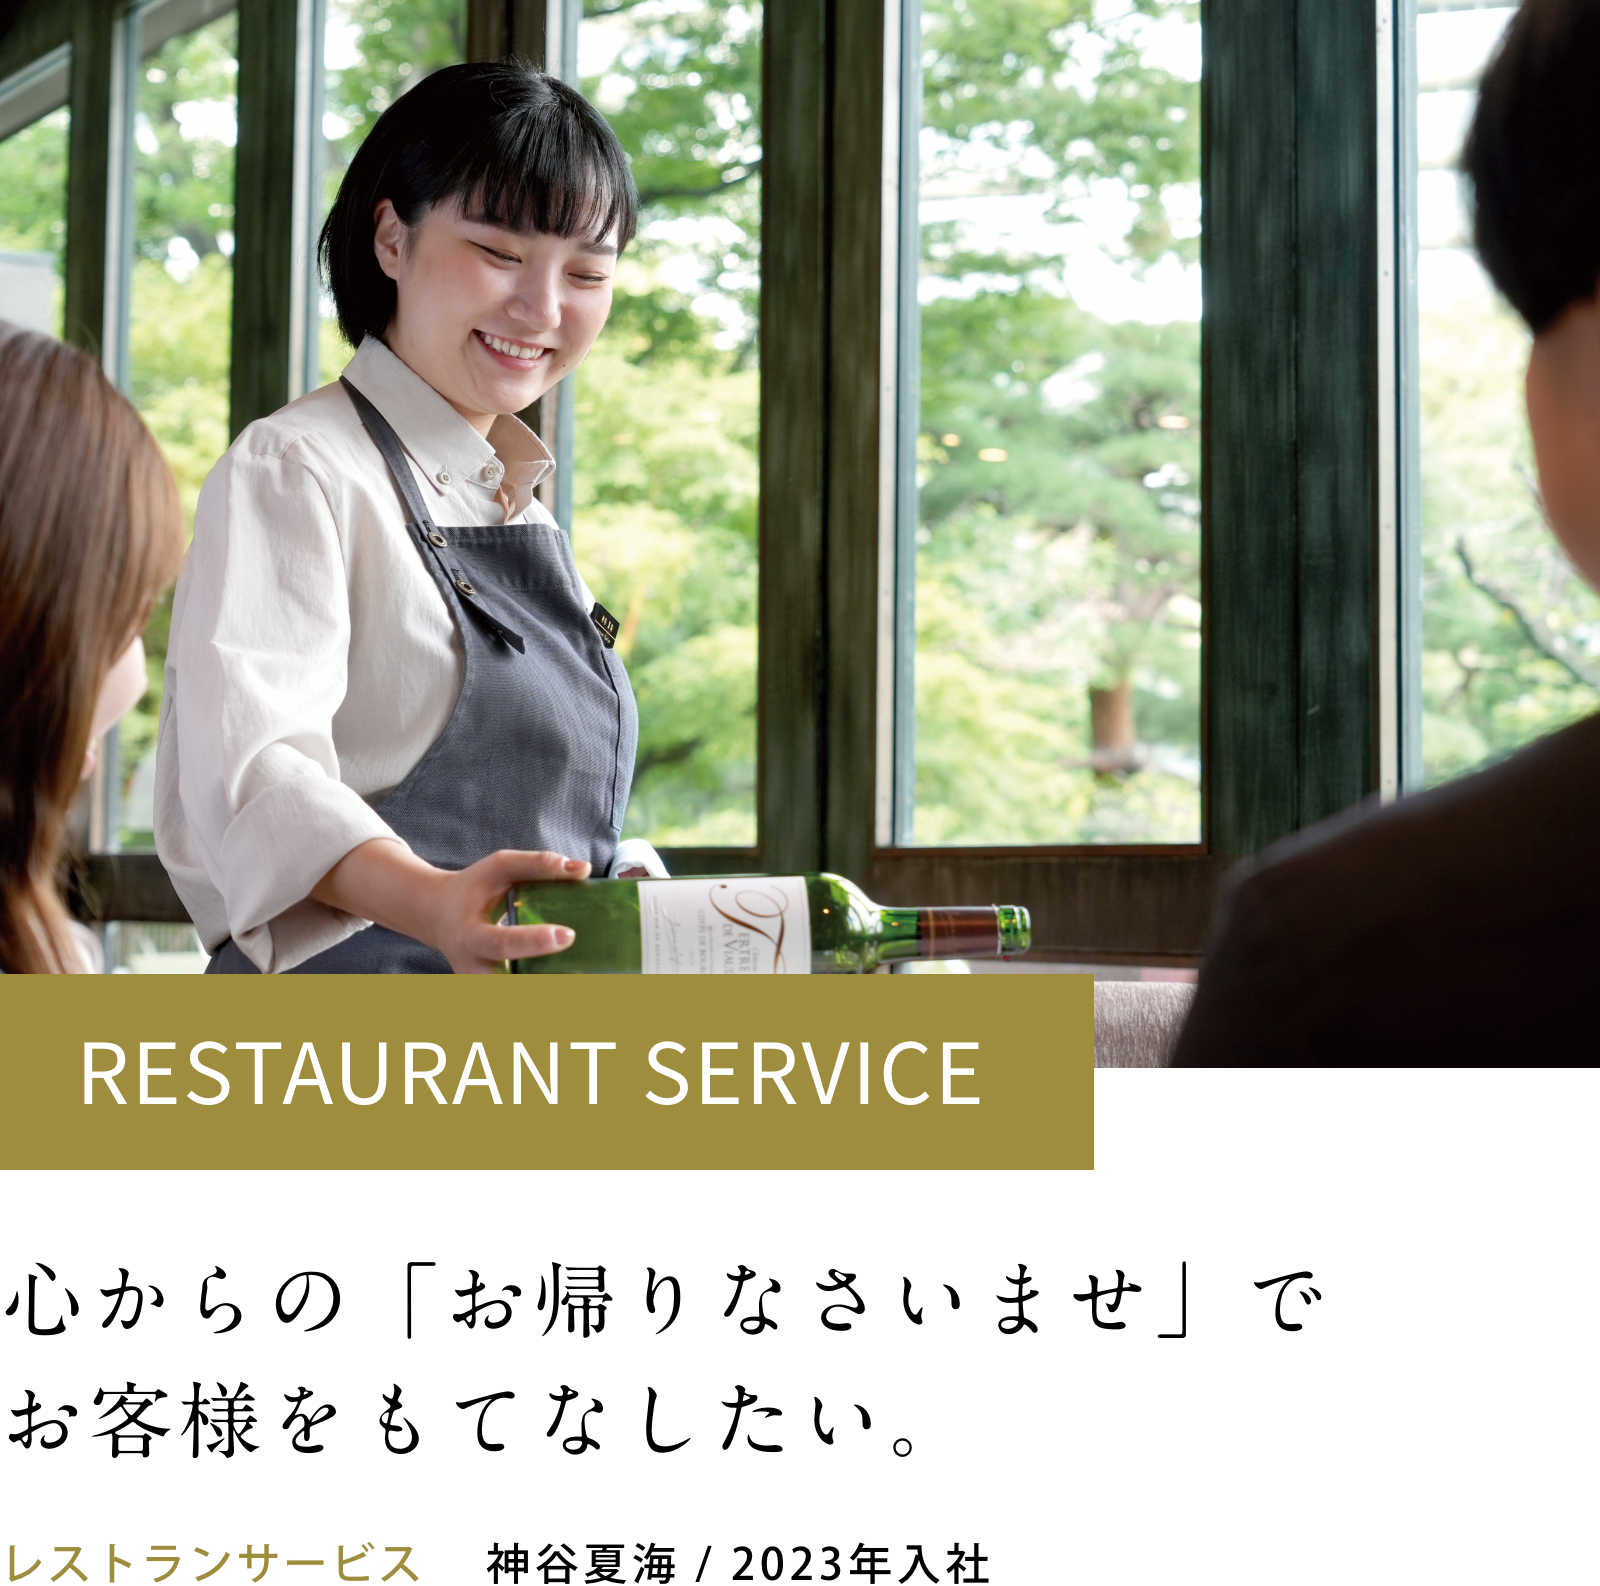 レストランサービス:神谷夏海